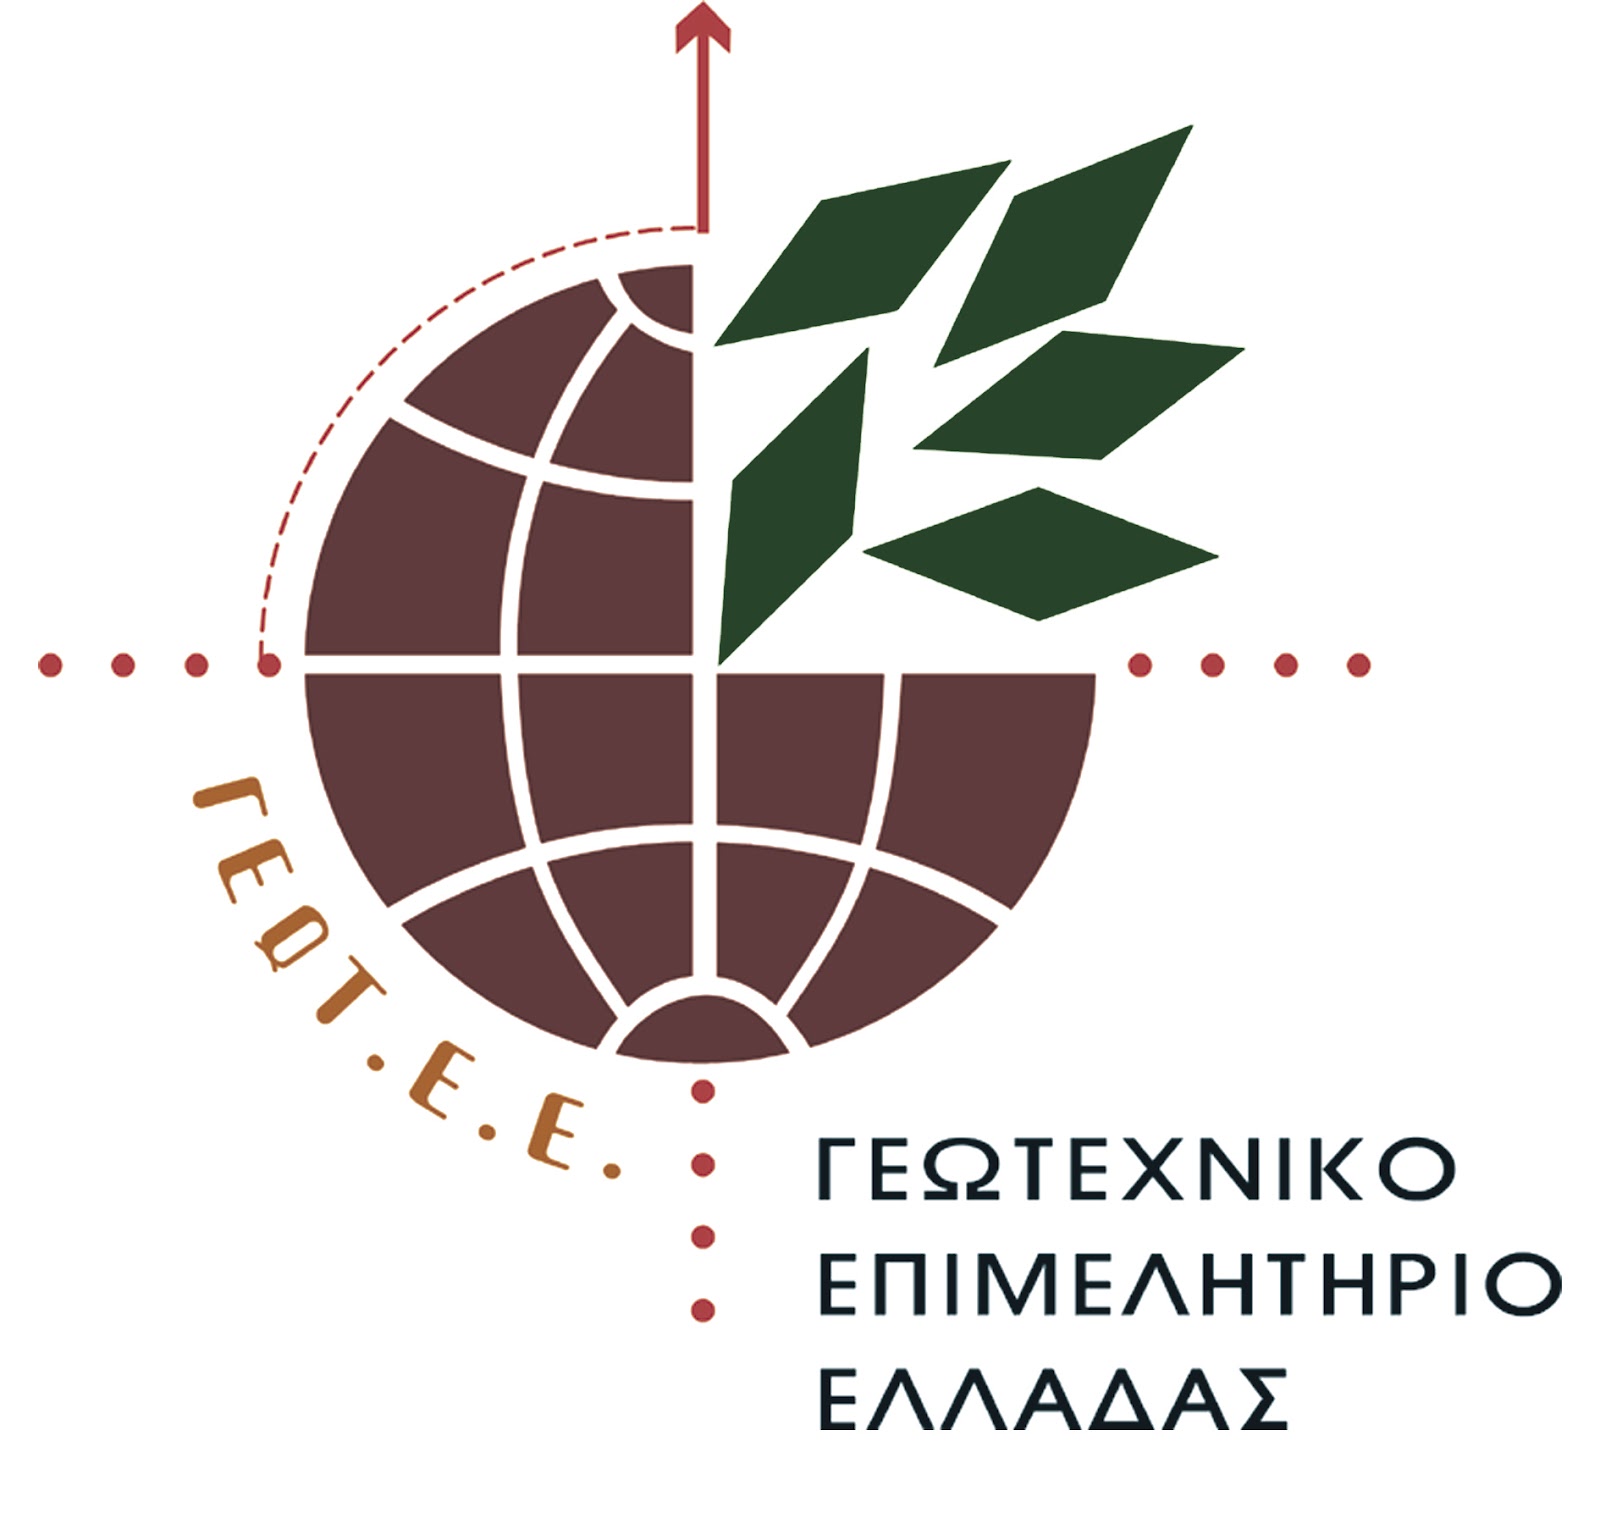 Γεωτεχνικό Επιμελητήριο Ελλάδος – Παράρτημα Δυτικής Μακεδονίας: Κοπή πρωτοχρονιάτικης πίτας & ενημερωτική εκδήλωση